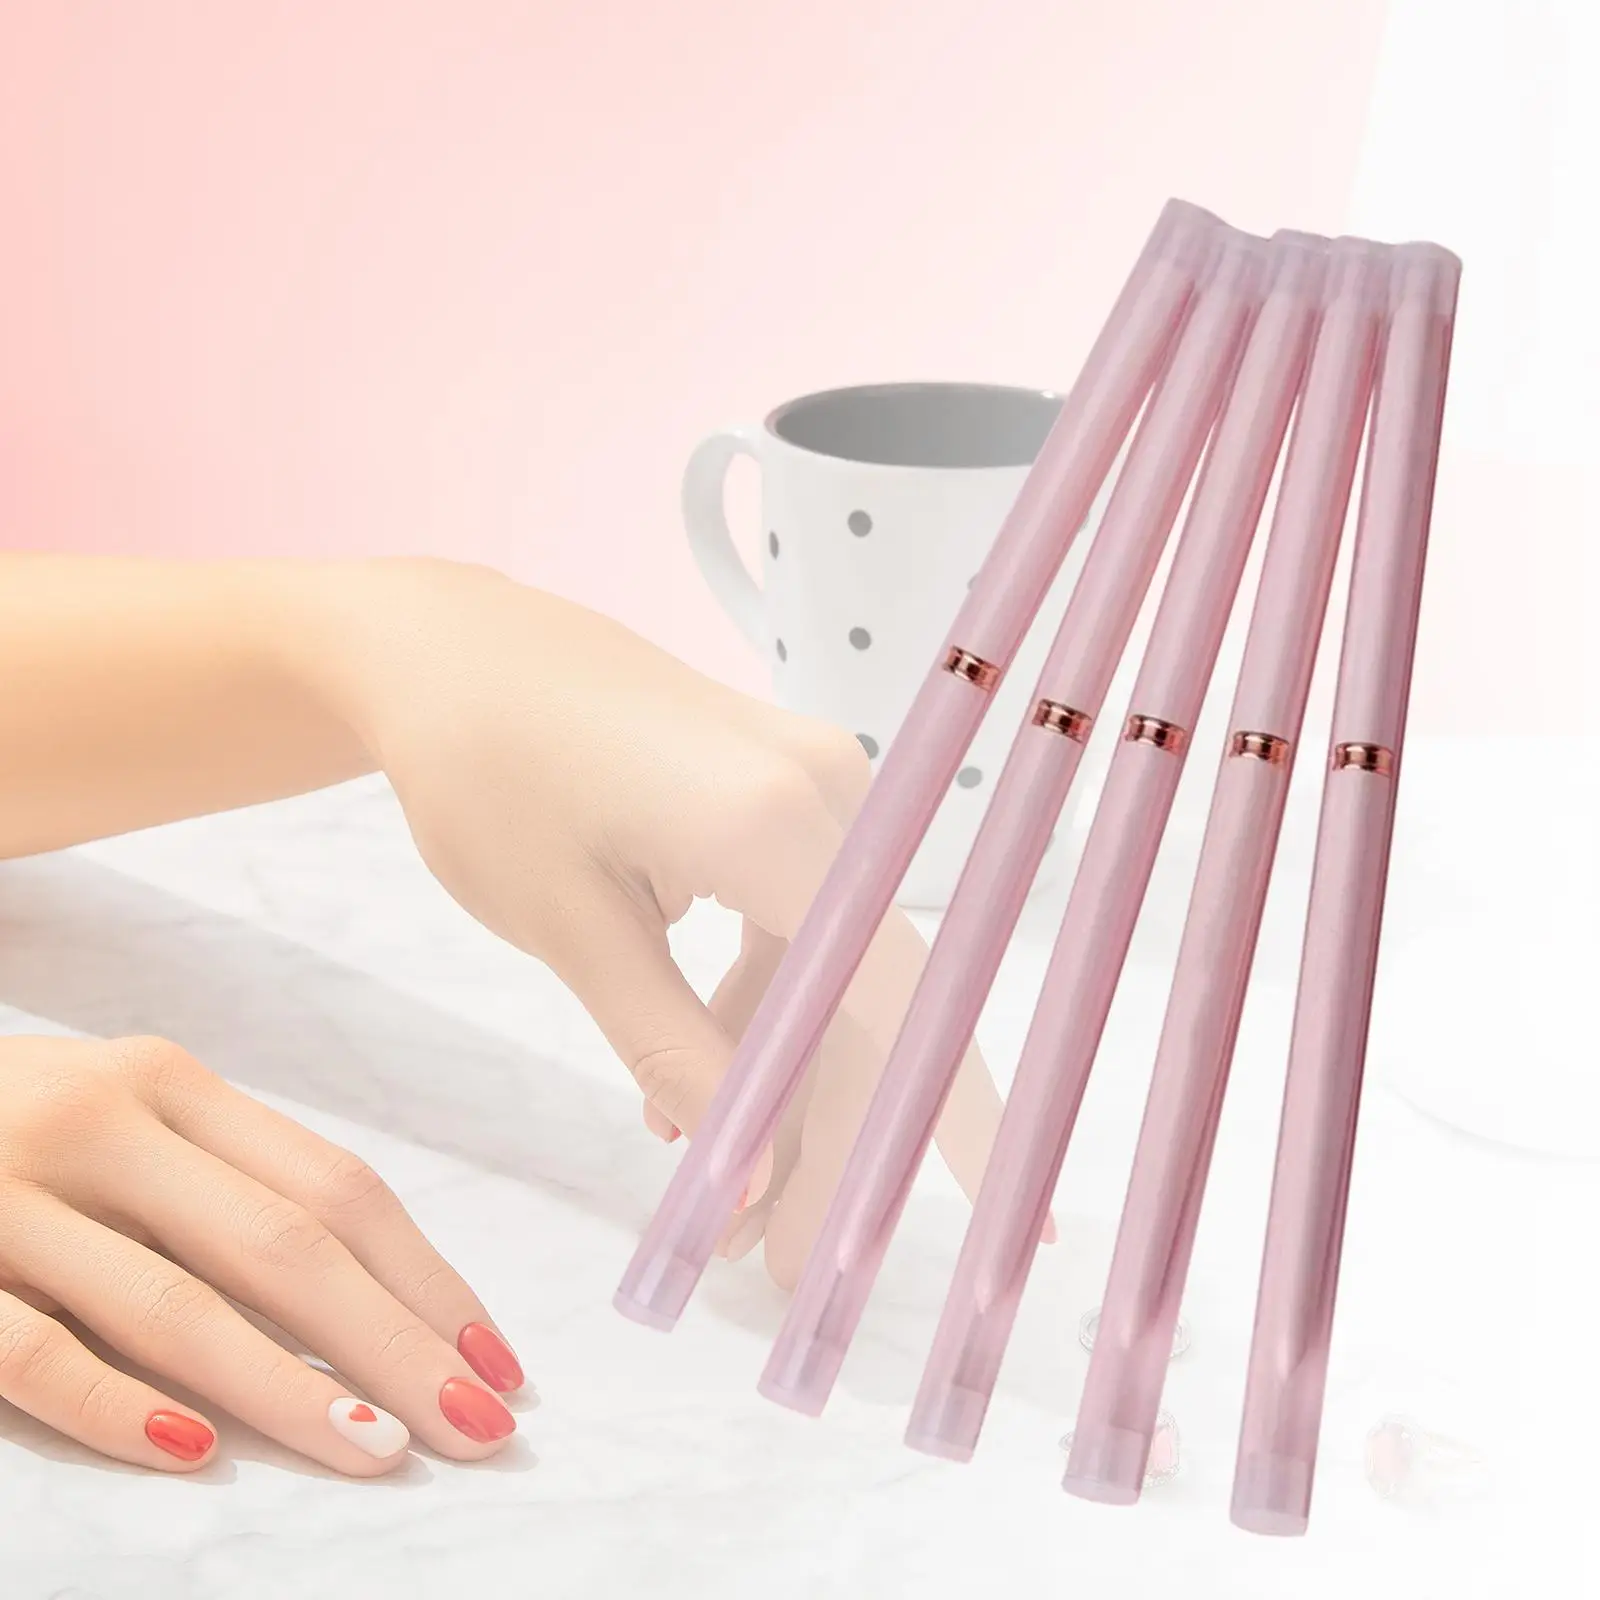 5x Nail Art Liner Brush Set Nail Drawing Brush for Elongated Lines Nail Art Design Brushes Tool Long Lines Nail Painting Drawing